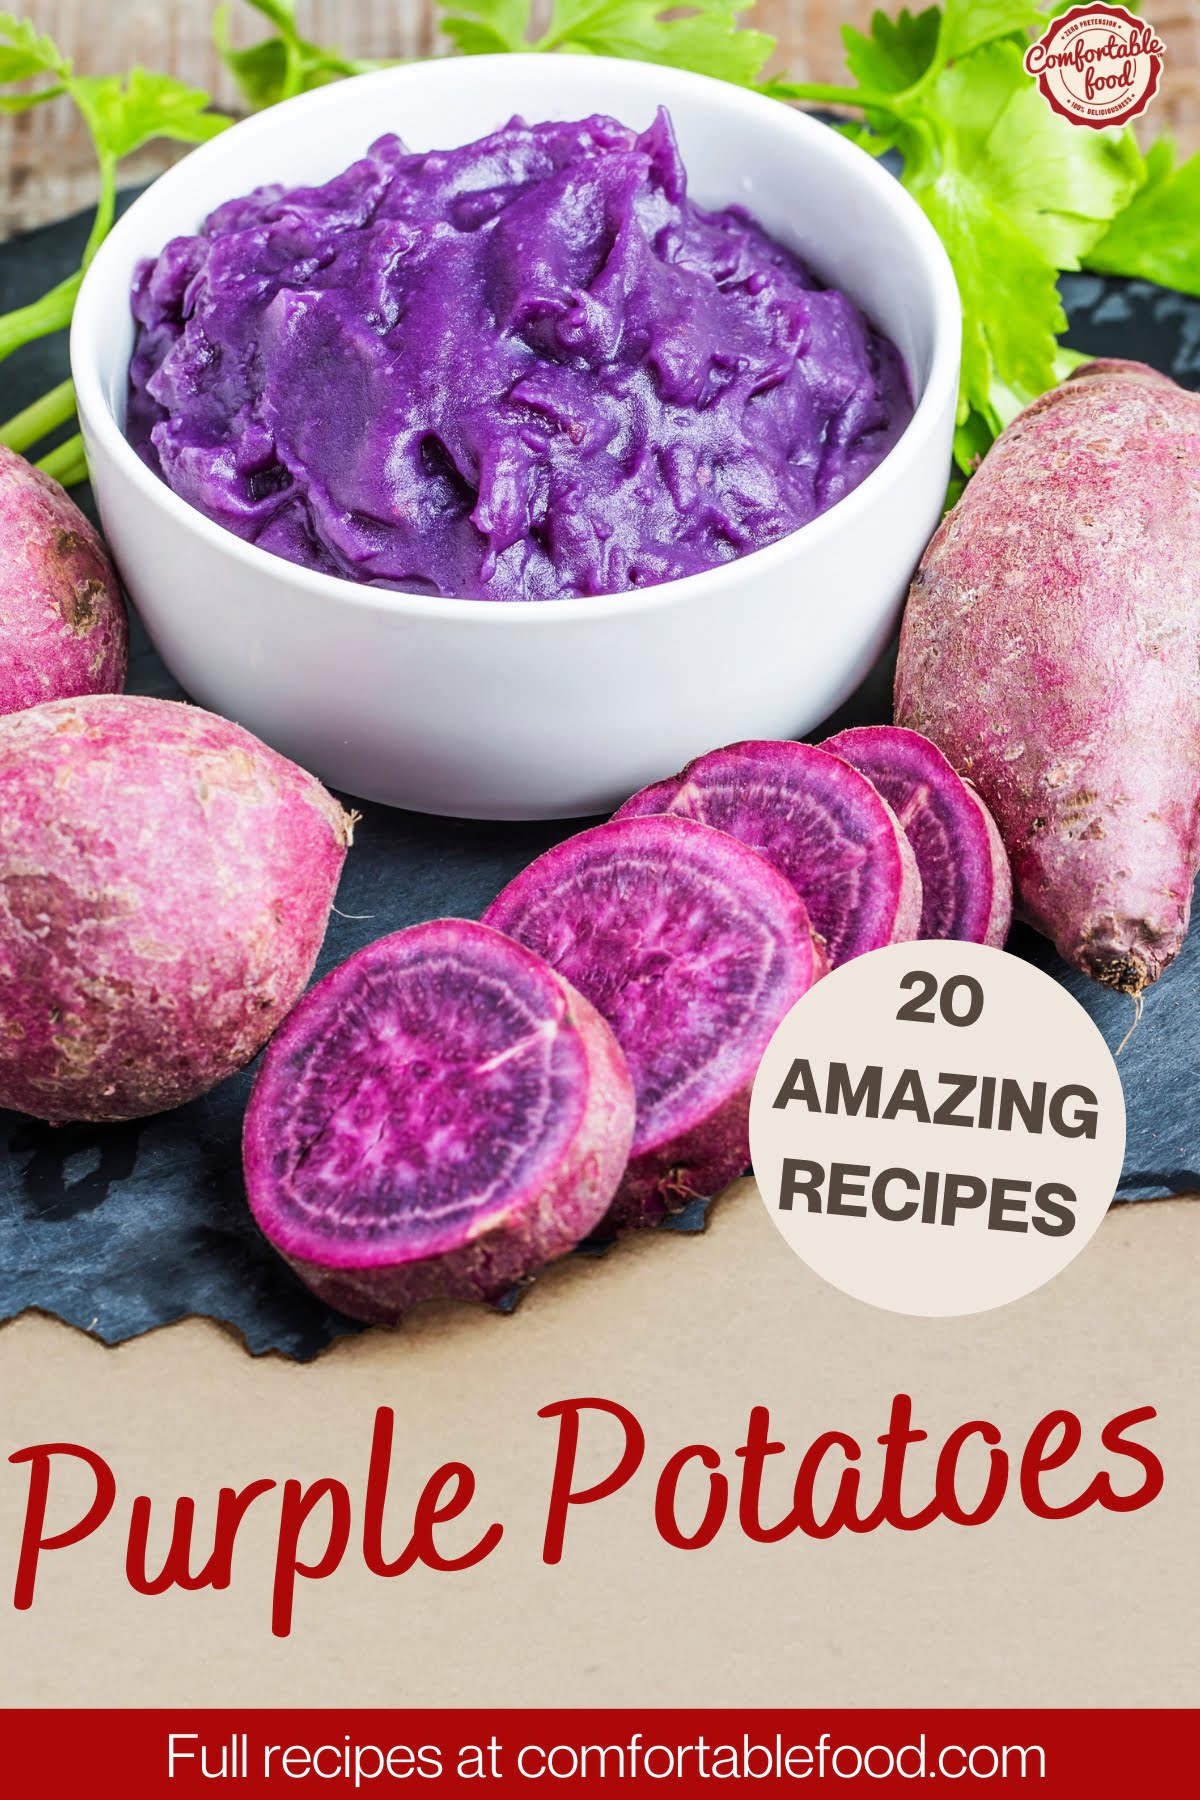 Amazing purple potatoes recipes - socials